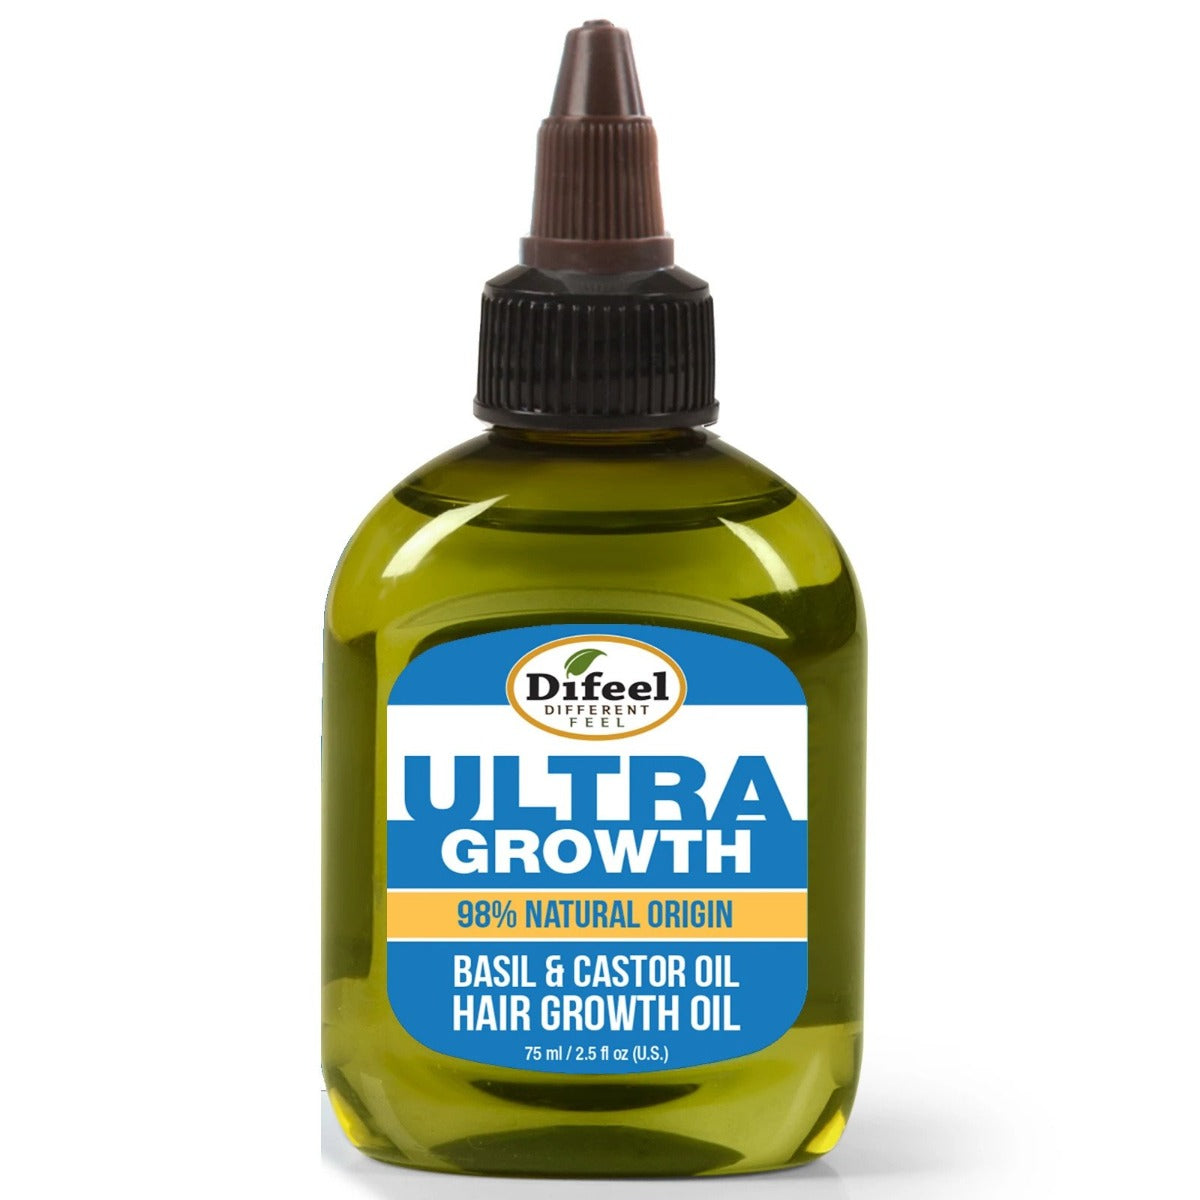 Difeel Ultra Growth Basil & Castor Hair Growth Oil 75ml